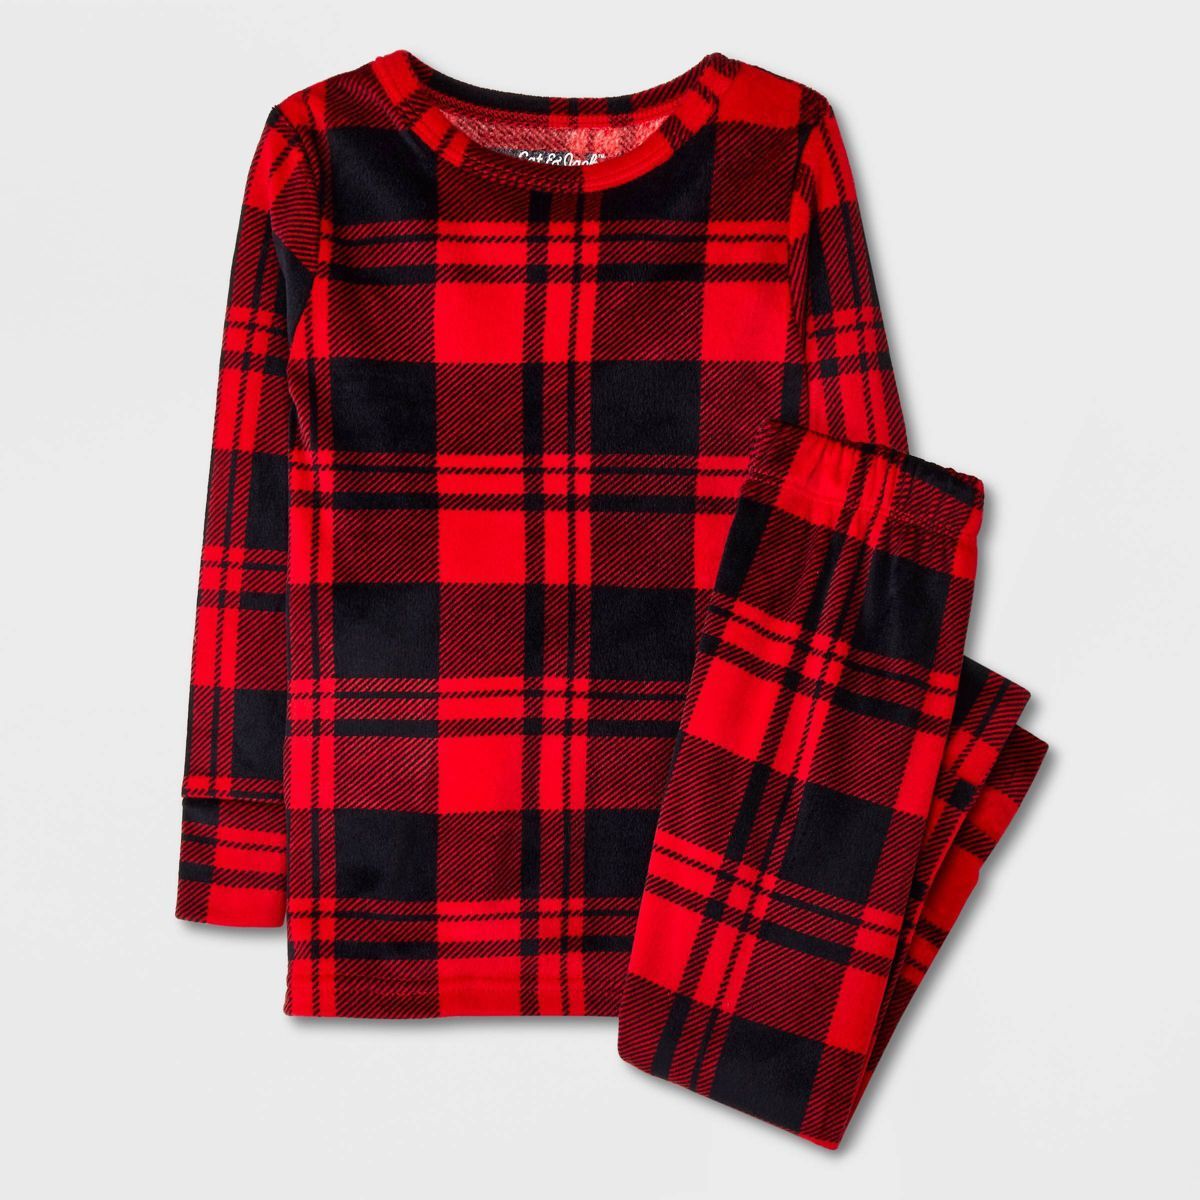 Toddler Boys' 2pc Plaid Pajama Set - Cat & Jack™ Red/Black | Target